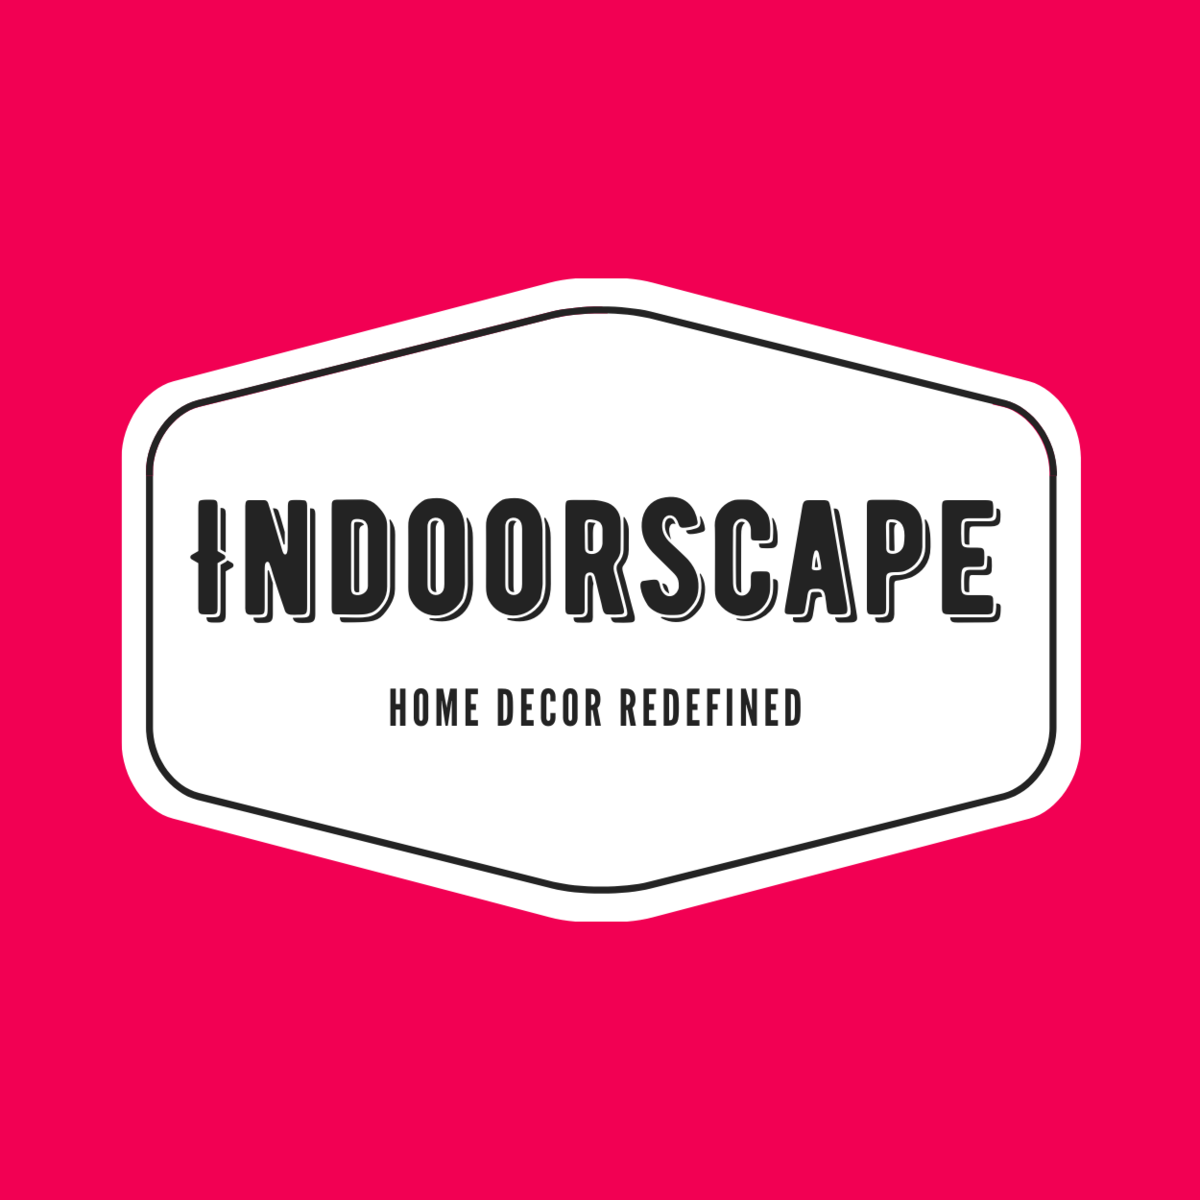 Indoor scape